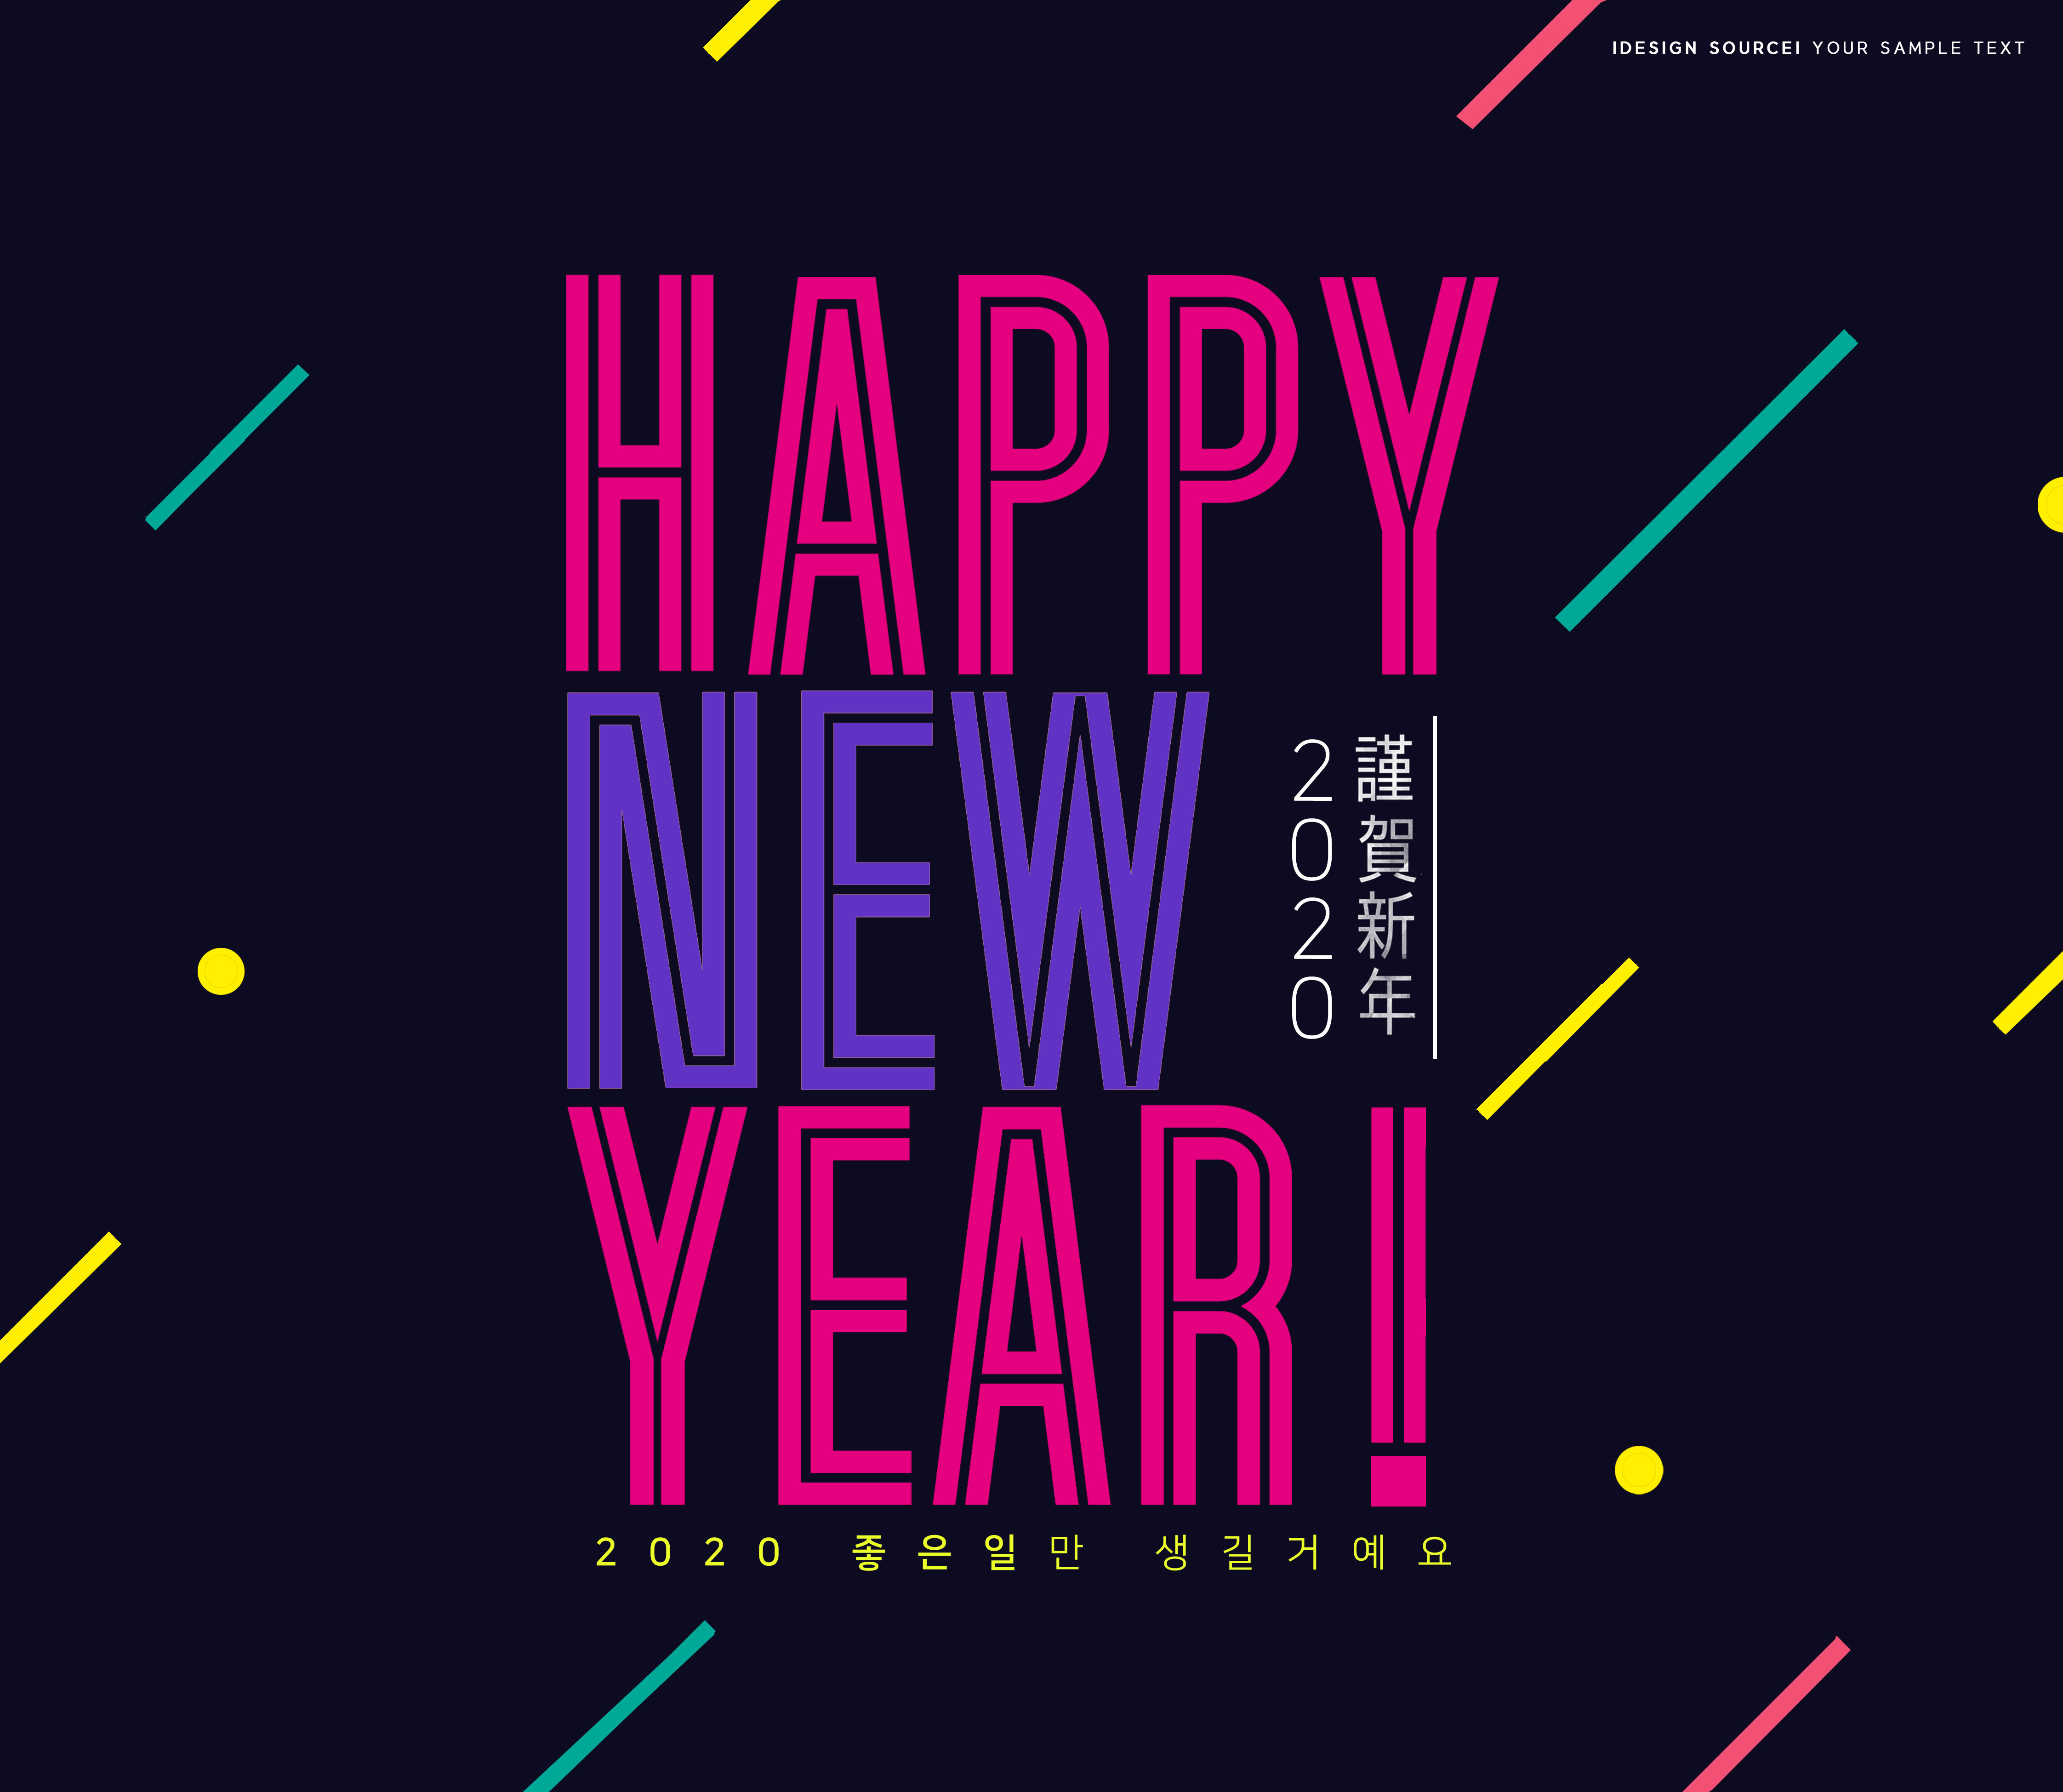 2020新年快乐主题海报模板合辑[PSD]插图(3)